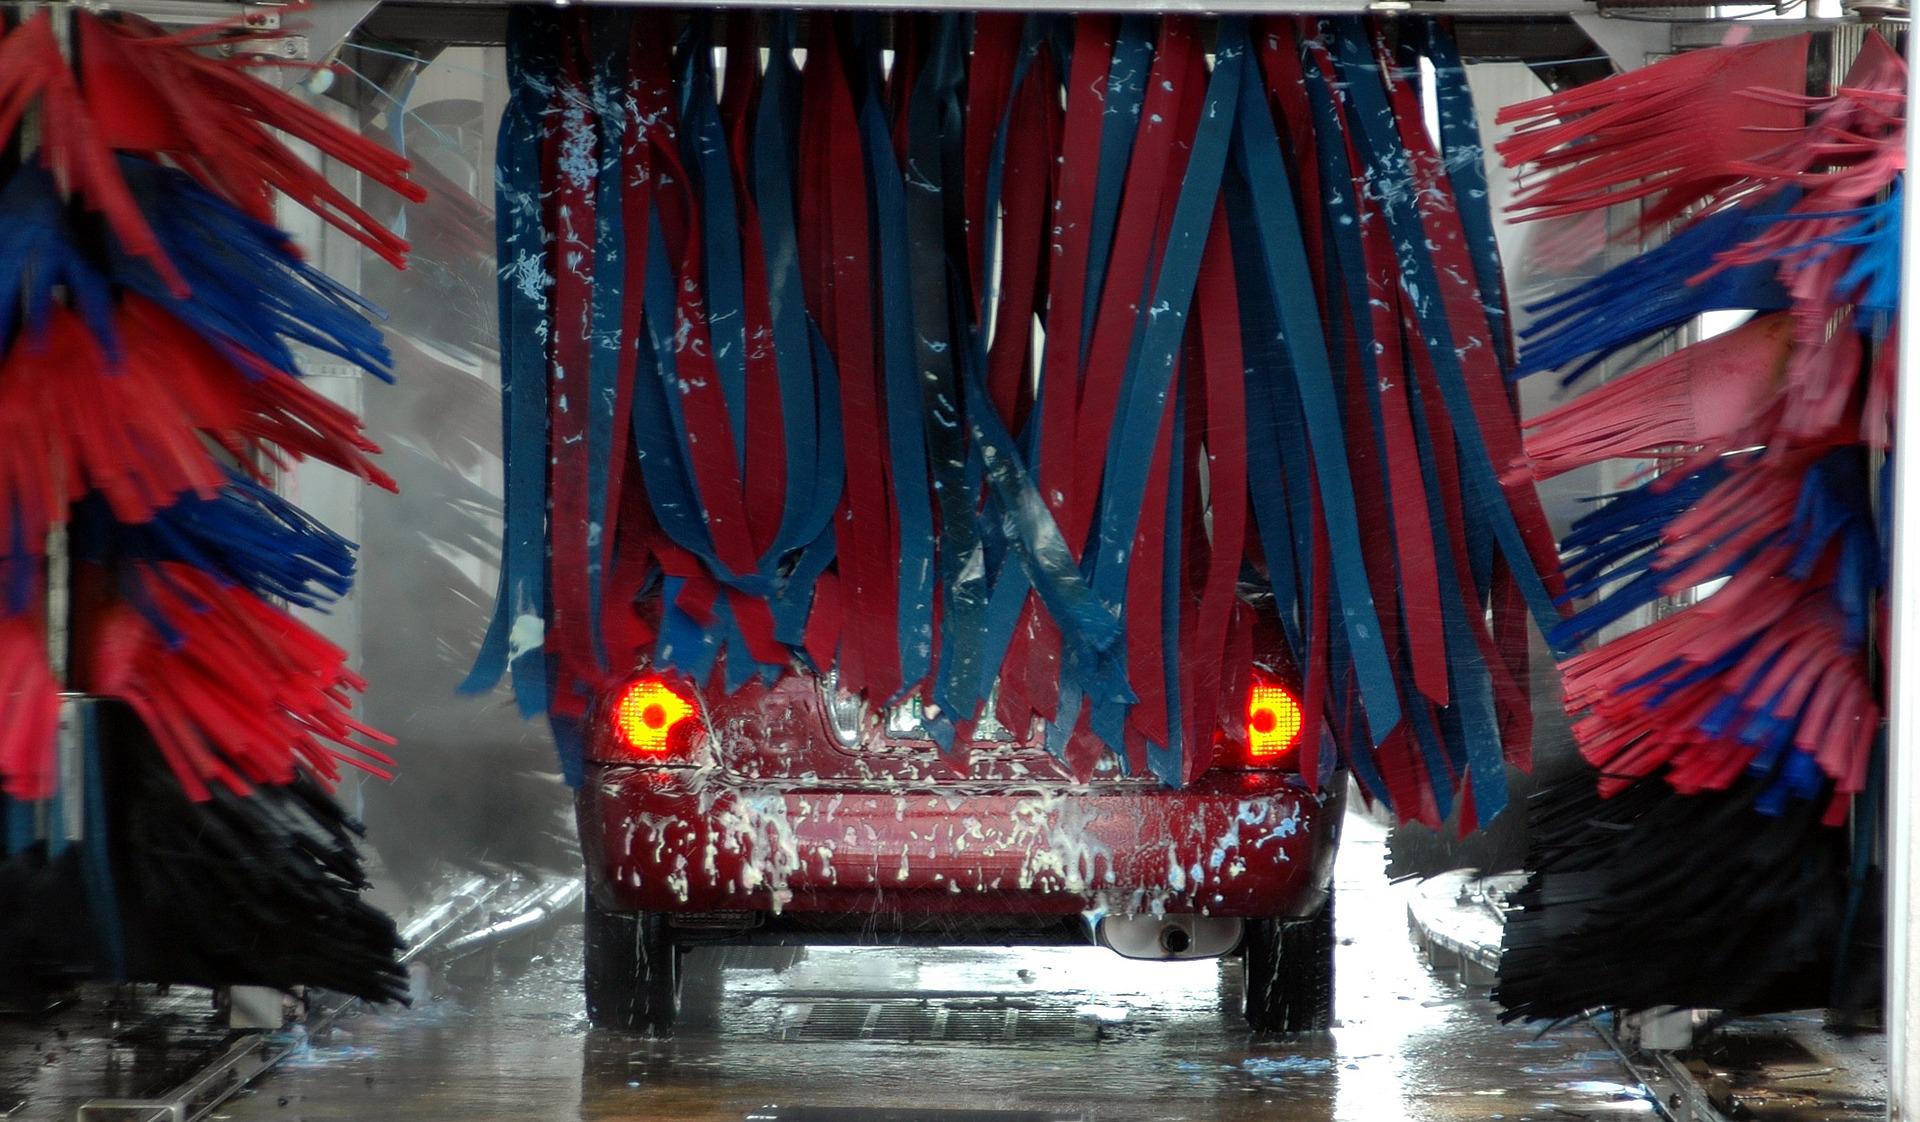 Watch The Lucid Air Goes Through A Car Wash